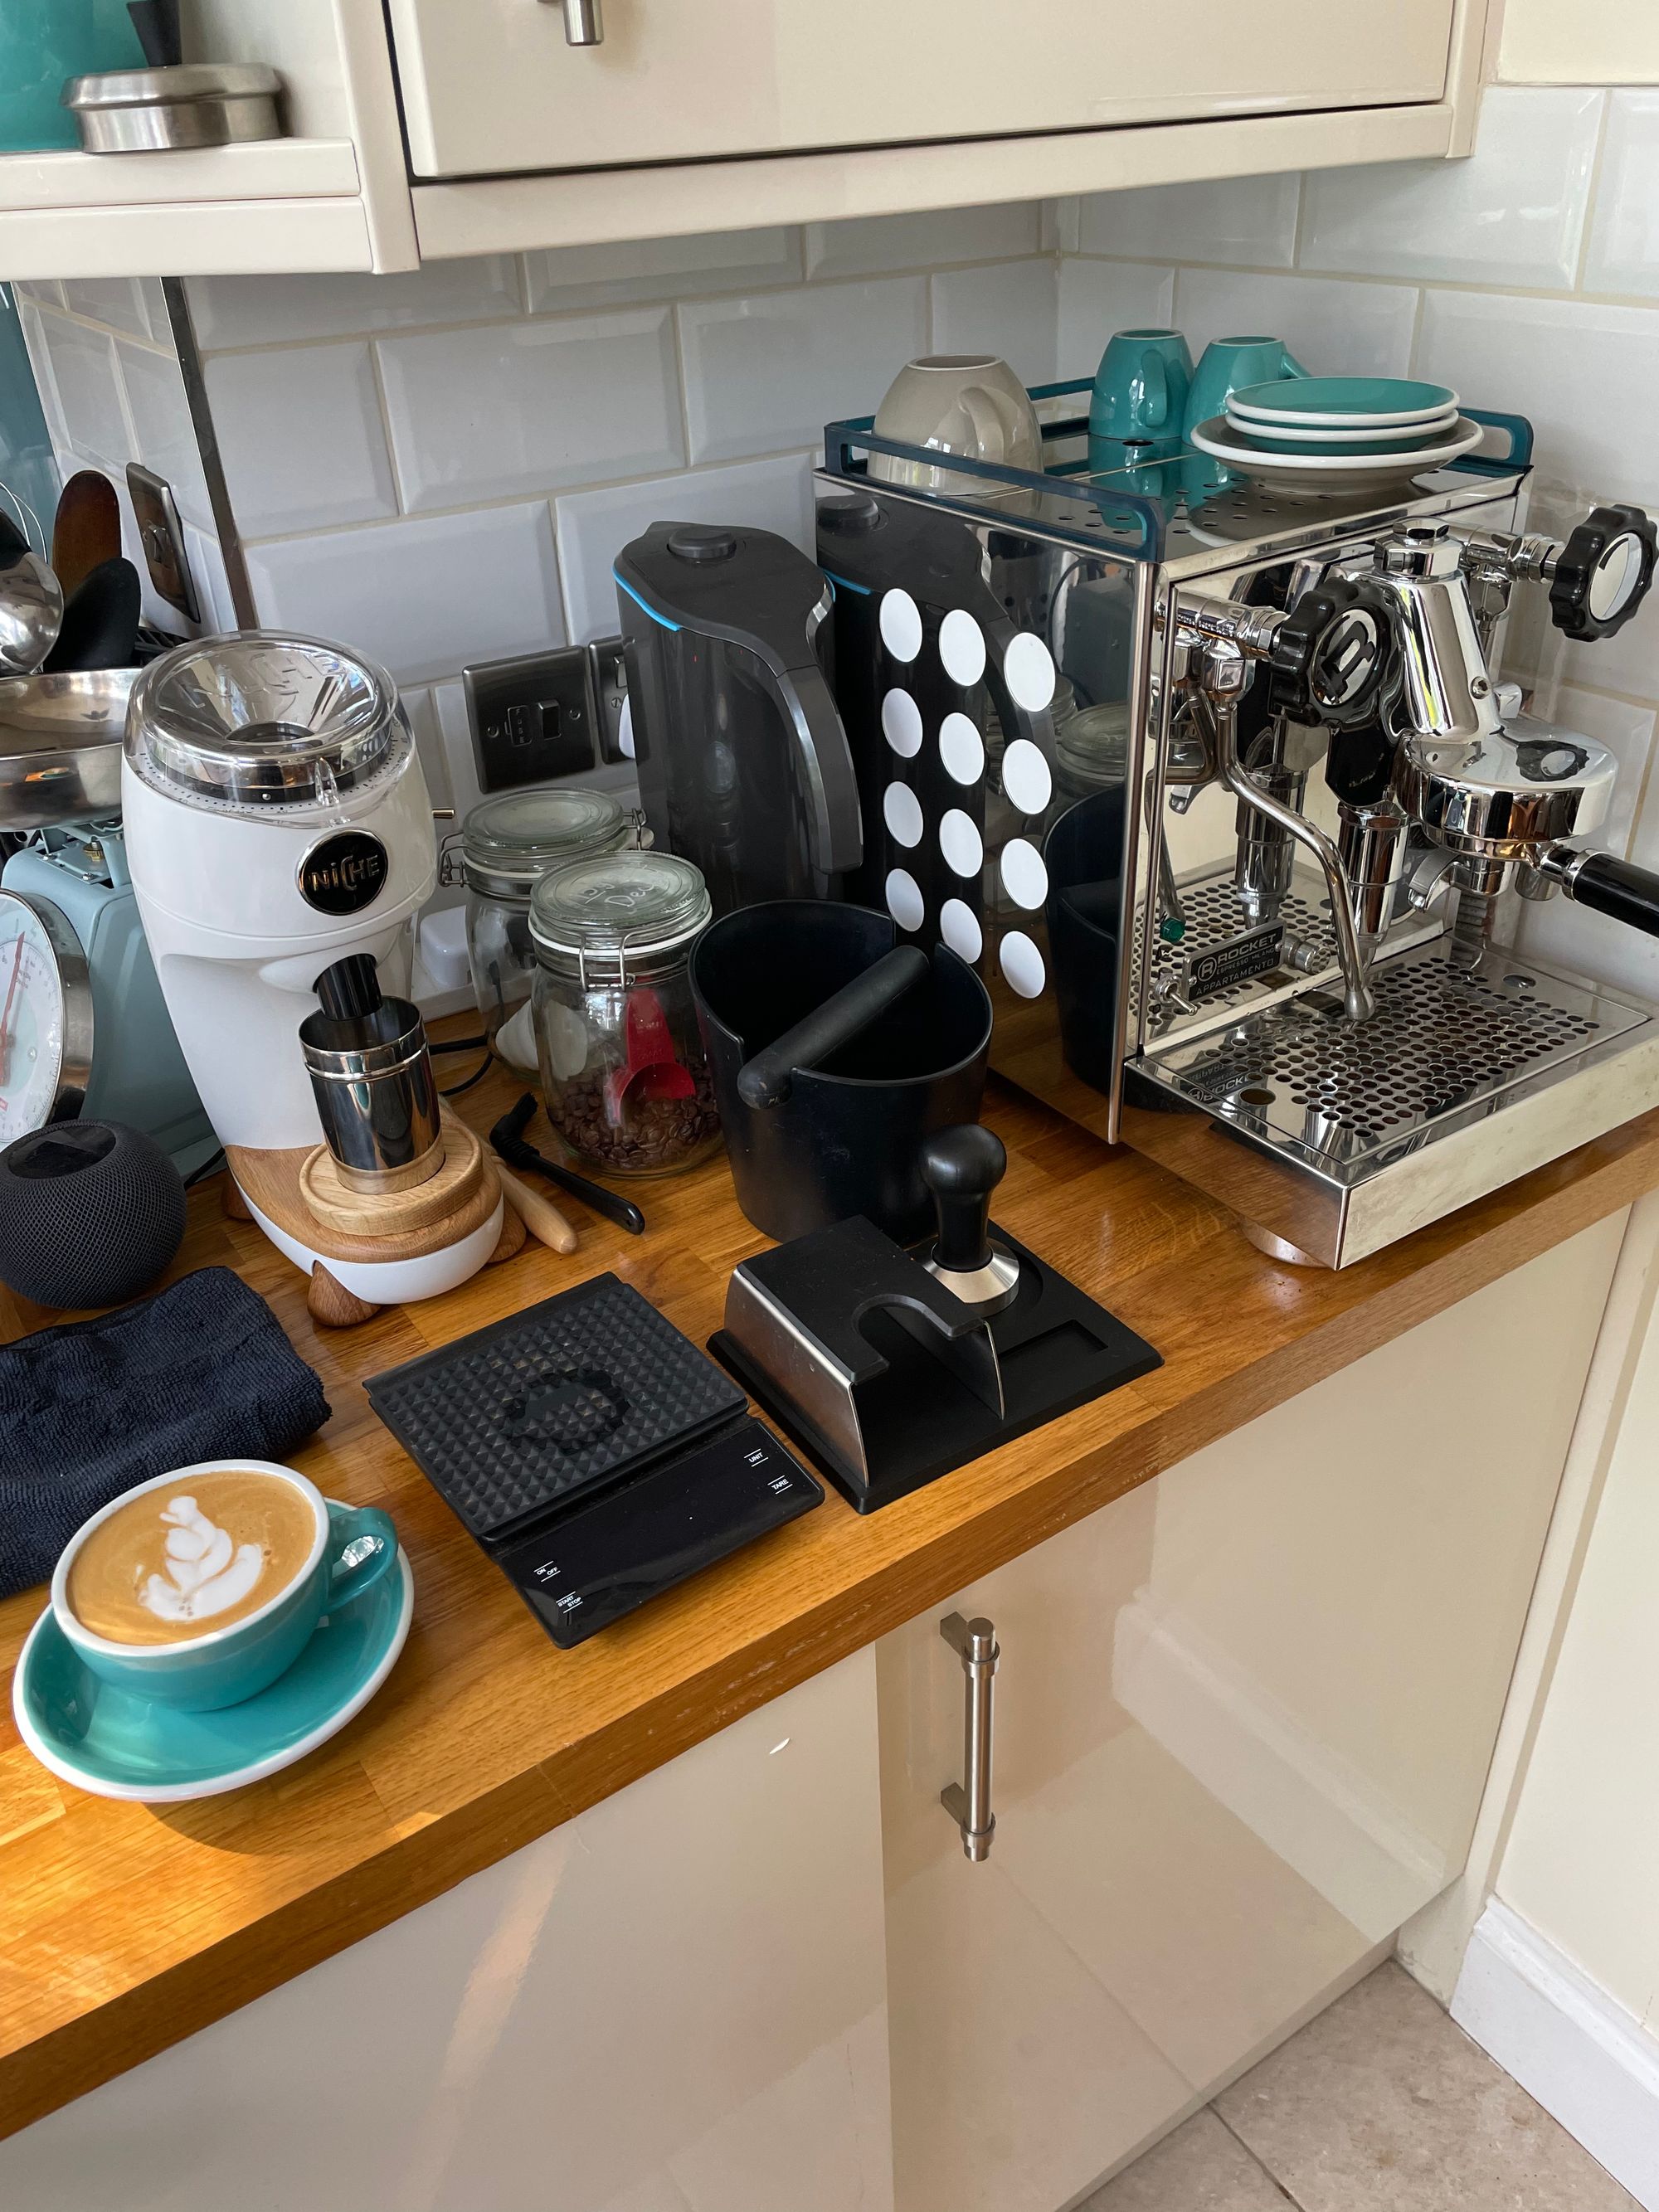 How to choose an espresso machine? - Blog